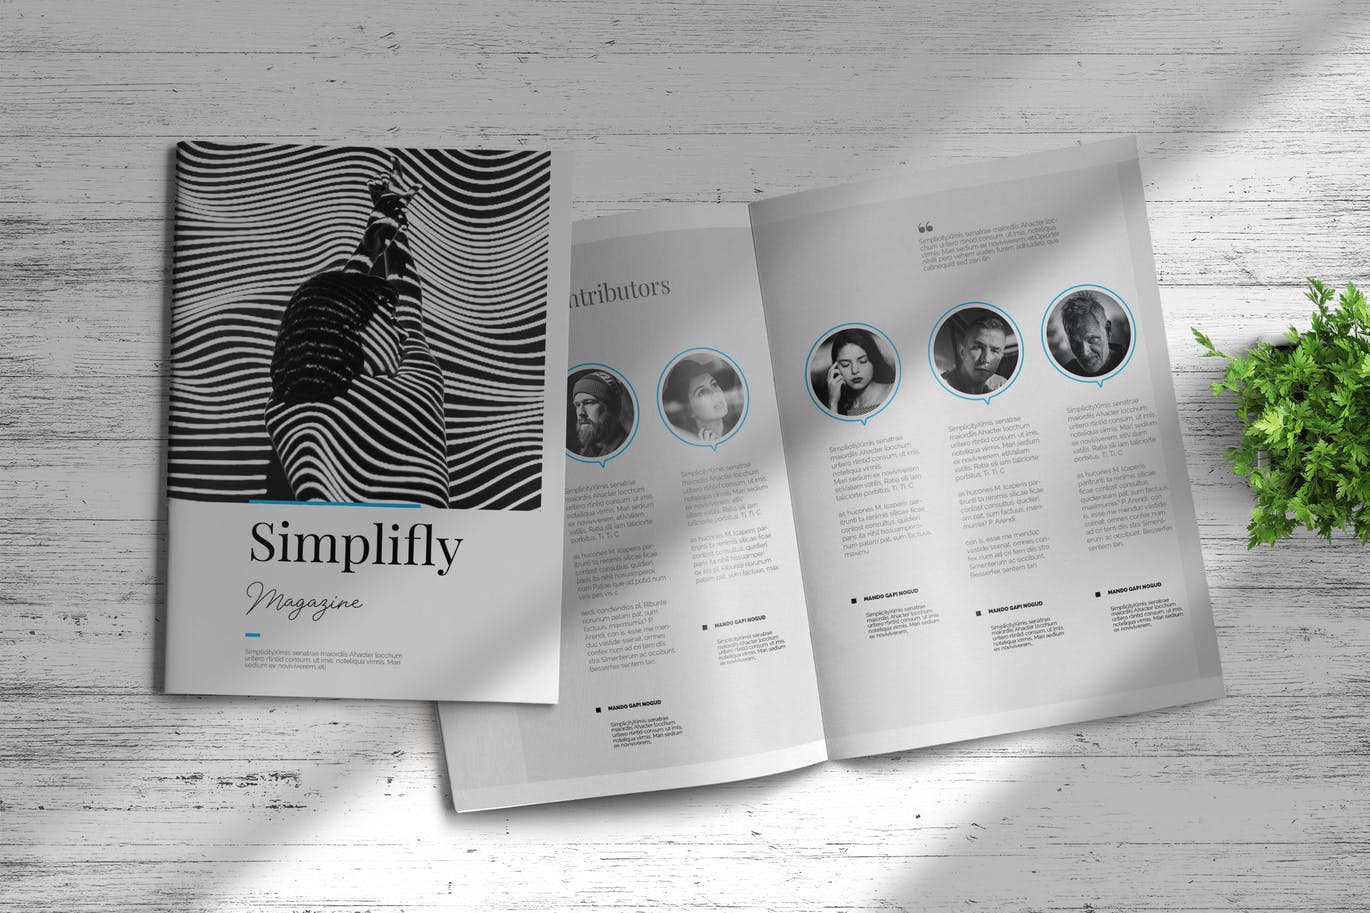 现代版式设计时尚素材库精选杂志INDD模板 Simplifly | Indesign Magazine Template插图